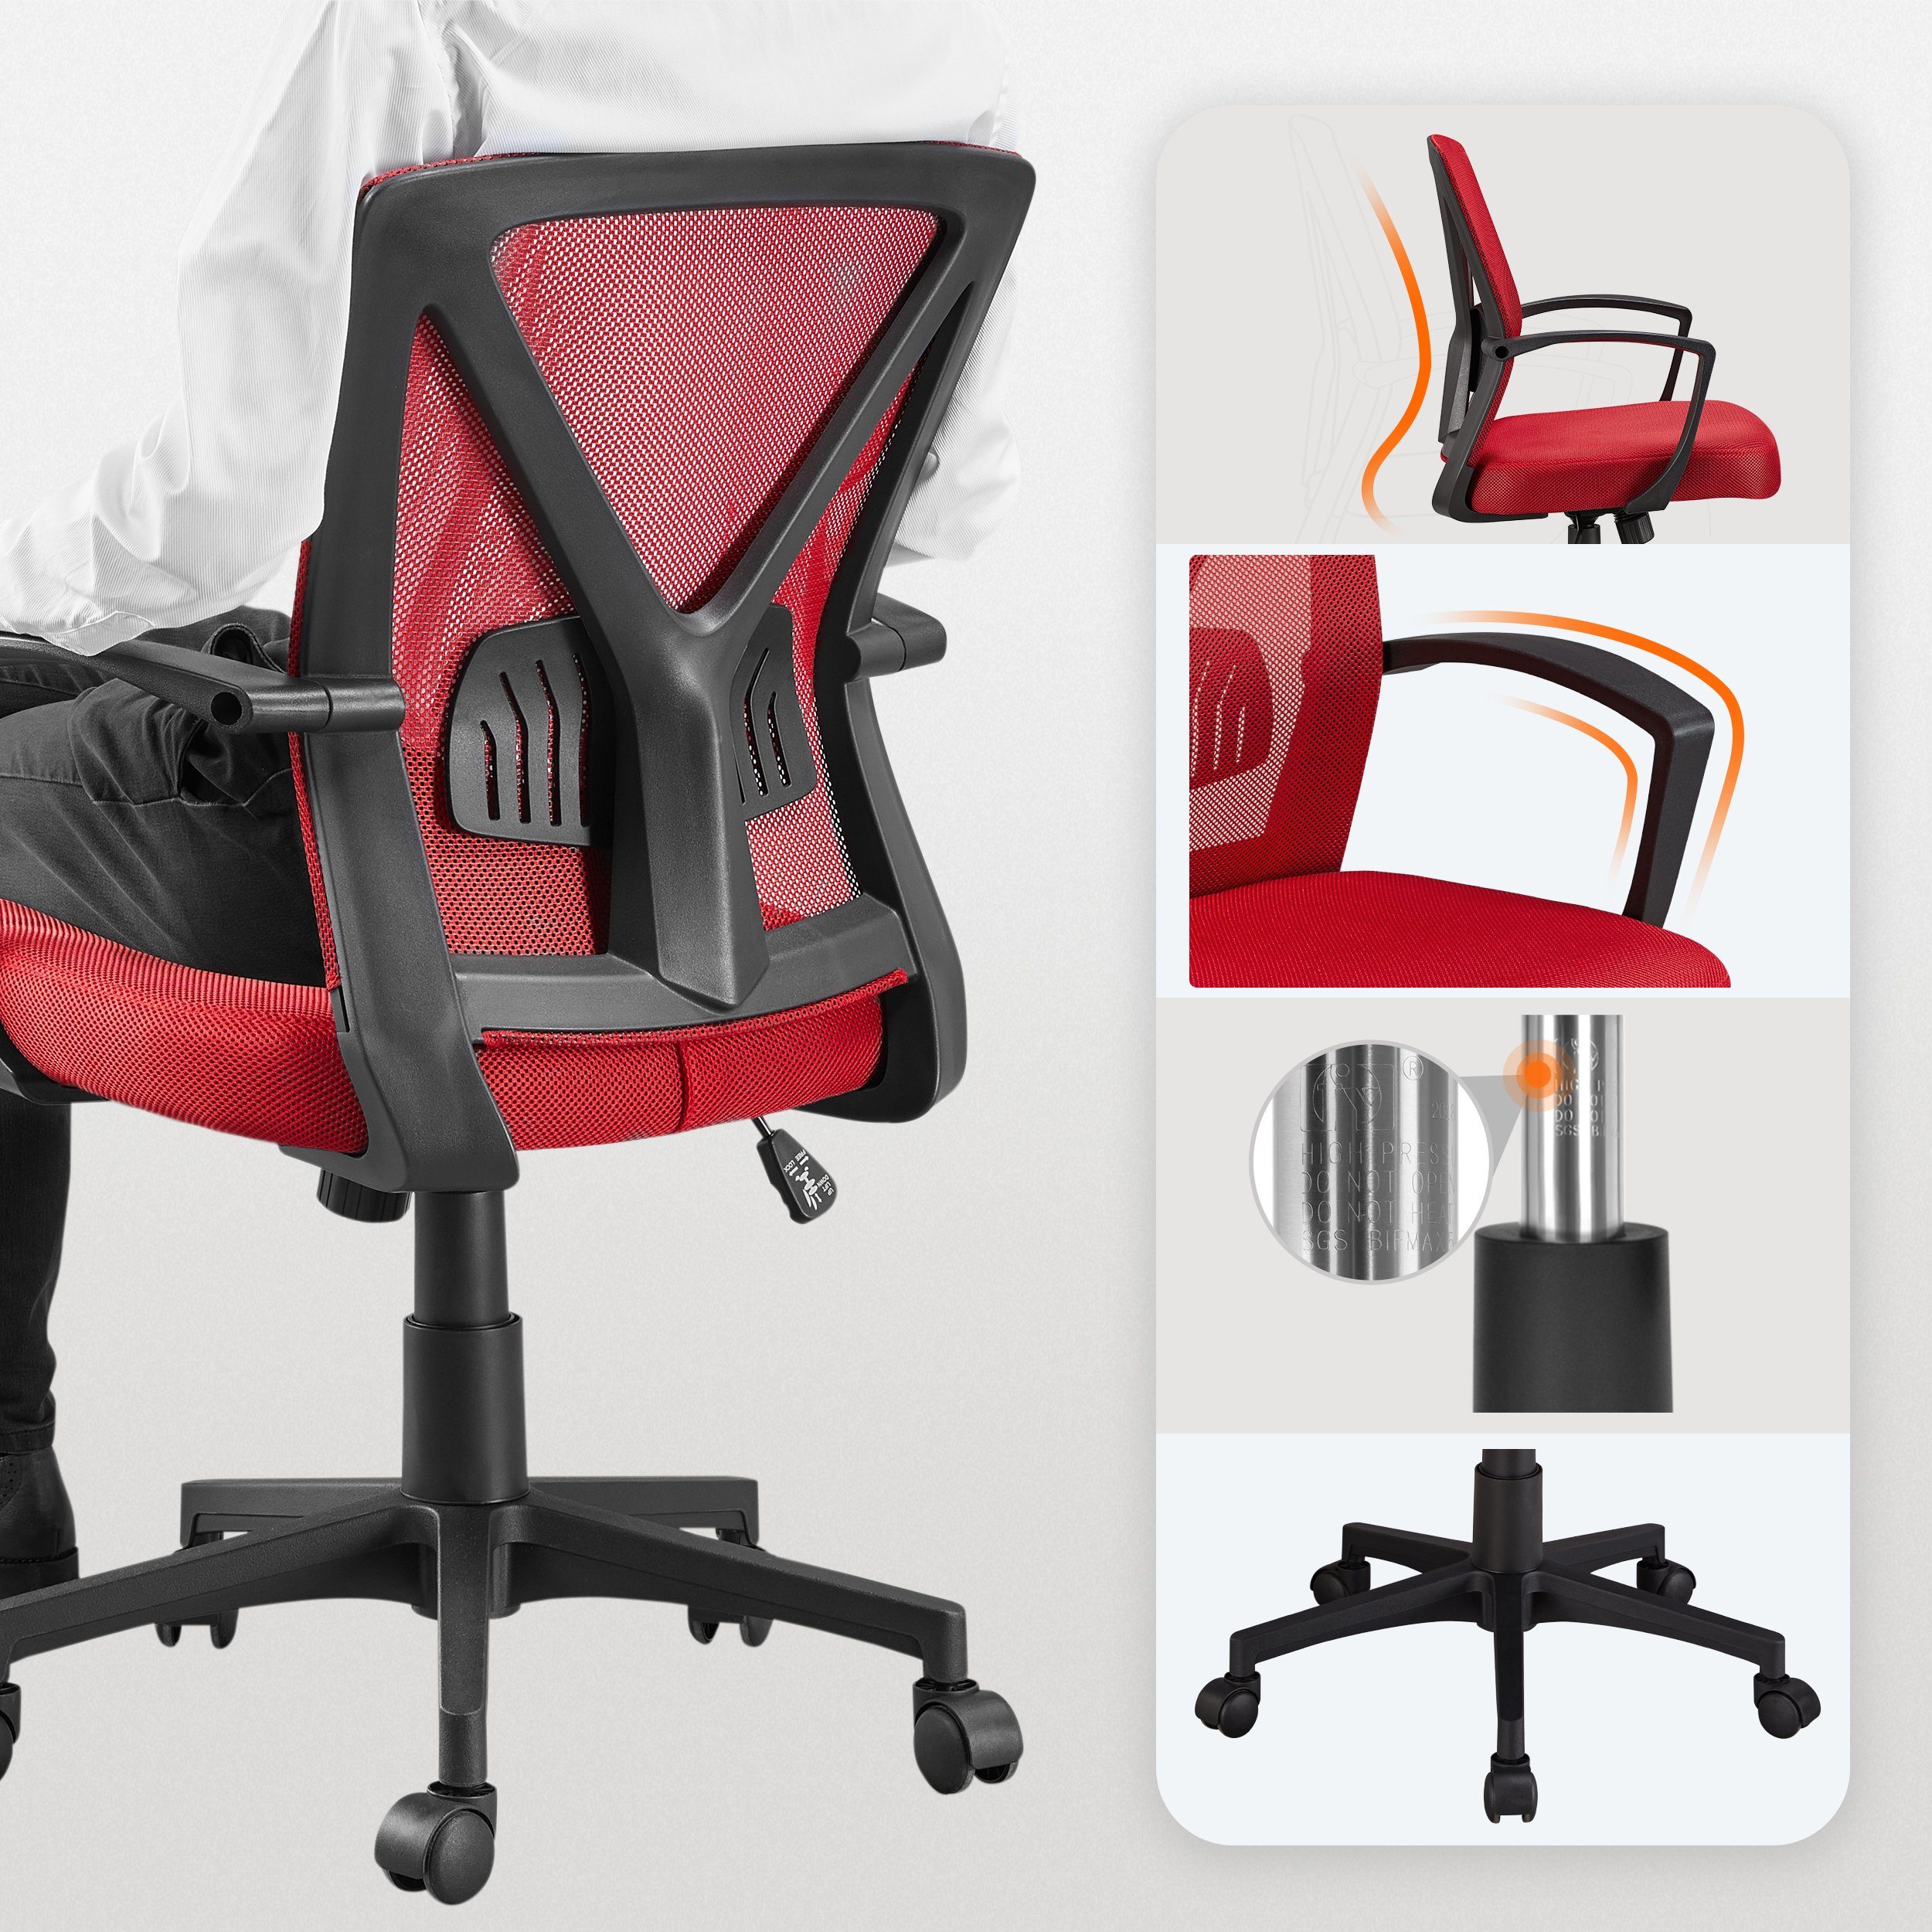 Yaheetech höhenverstellbar Bürostuhl mit Wippfunktion rot Schreibtischstuhl,